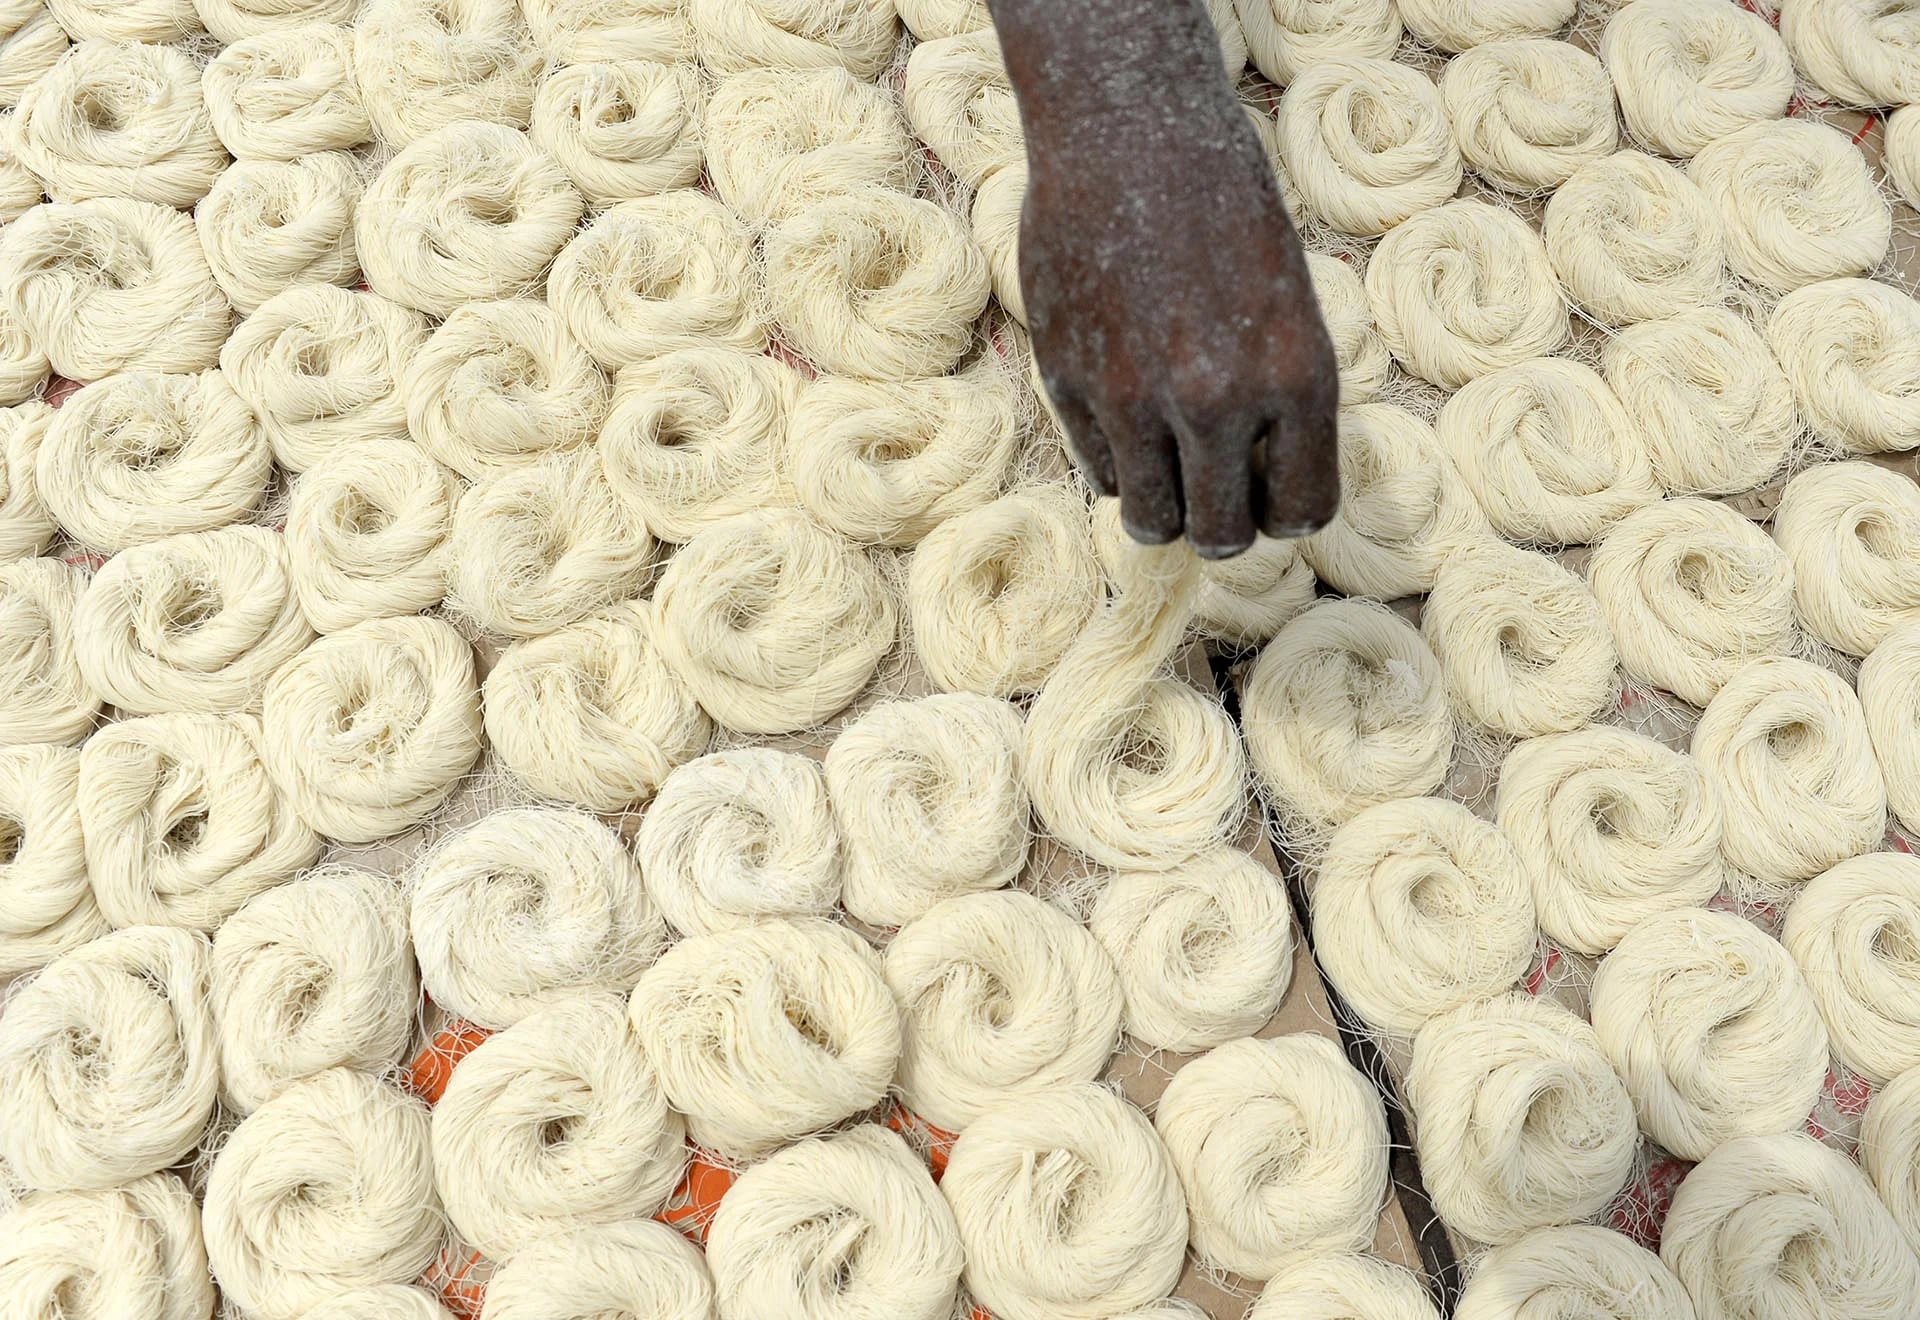 Un trabajador indio seca los fideos finos -que se utilizan para hacer el sheerkhorma, un plato tradicional preparado durante el mes de Ramadan- en Chennai